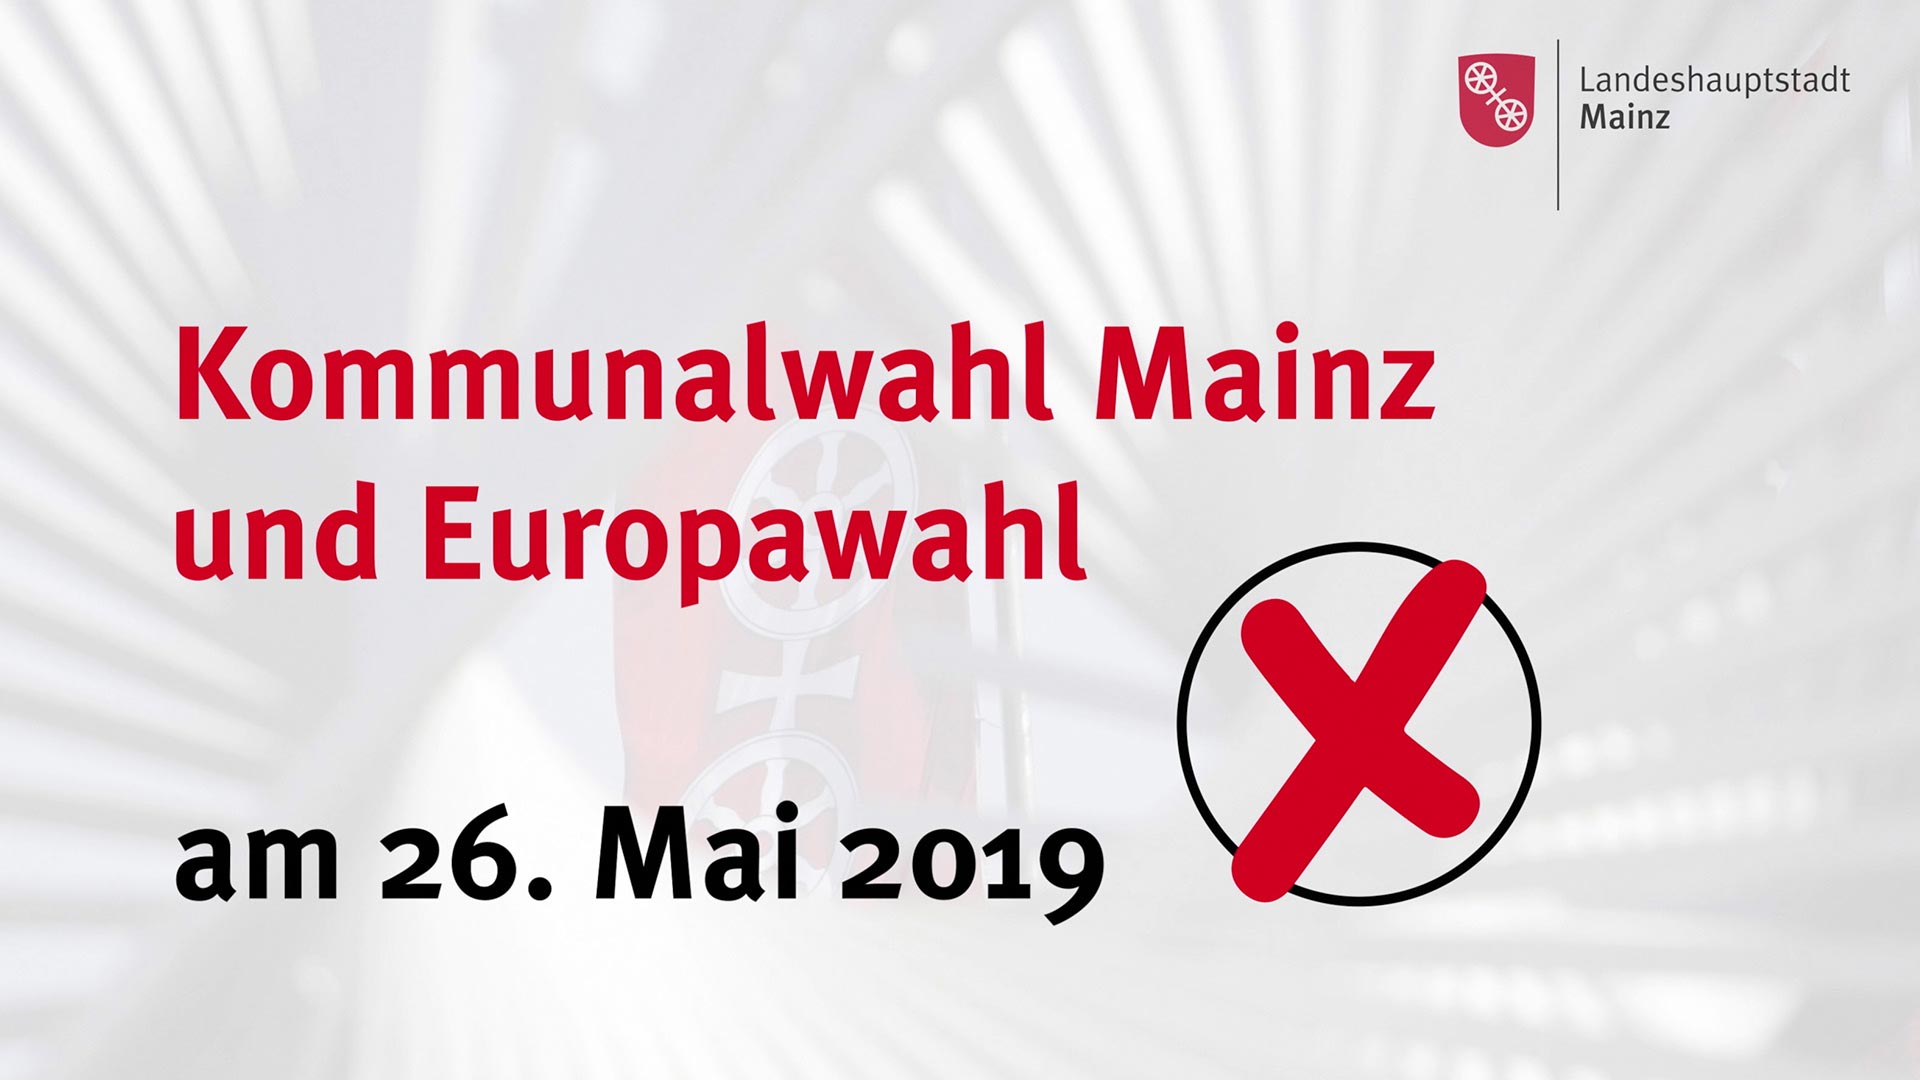 Stadt Mainz - Video zur Kommunalwahl